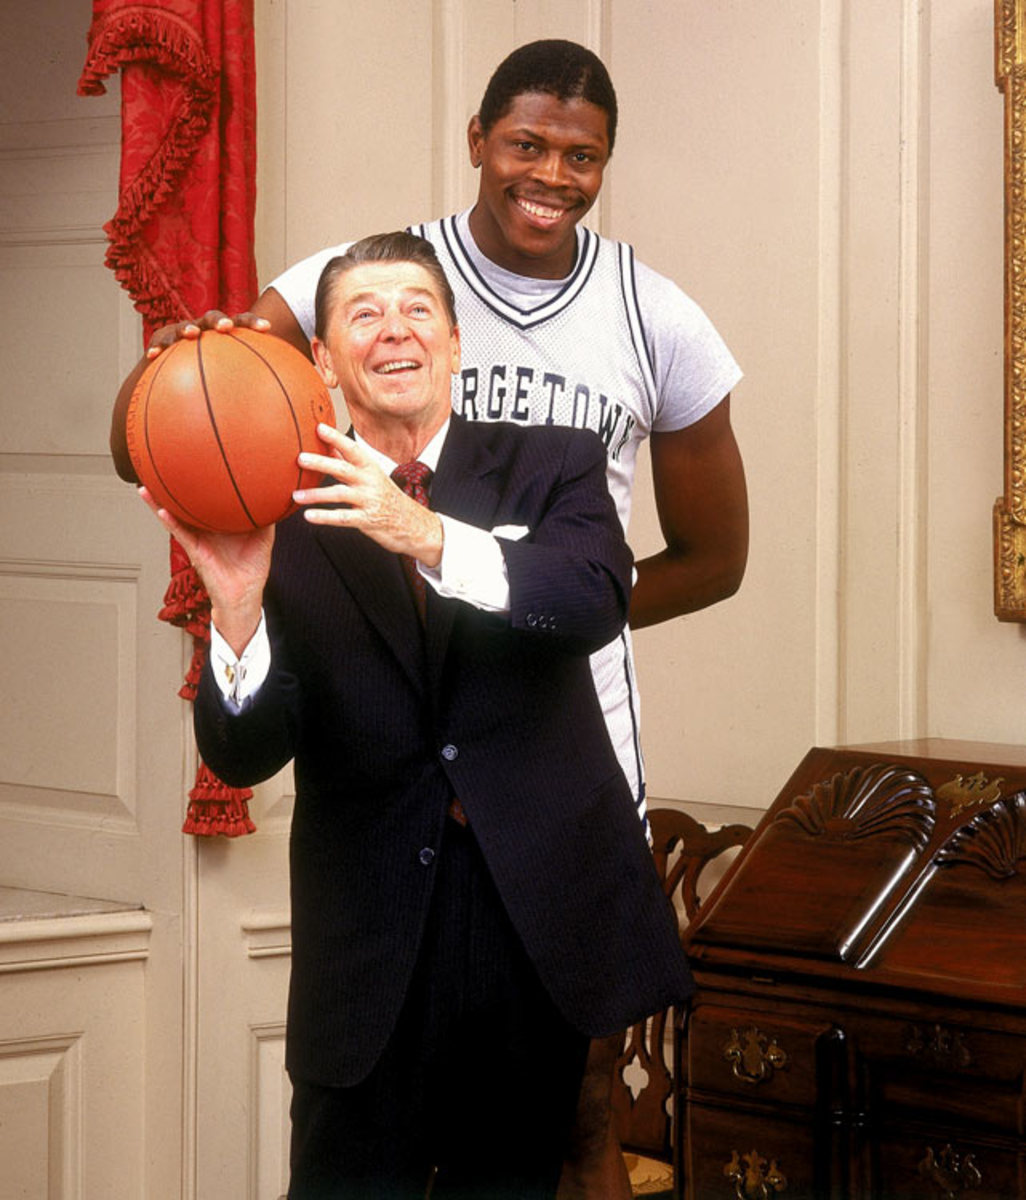 Ronald Reagan and Patrick Ewing